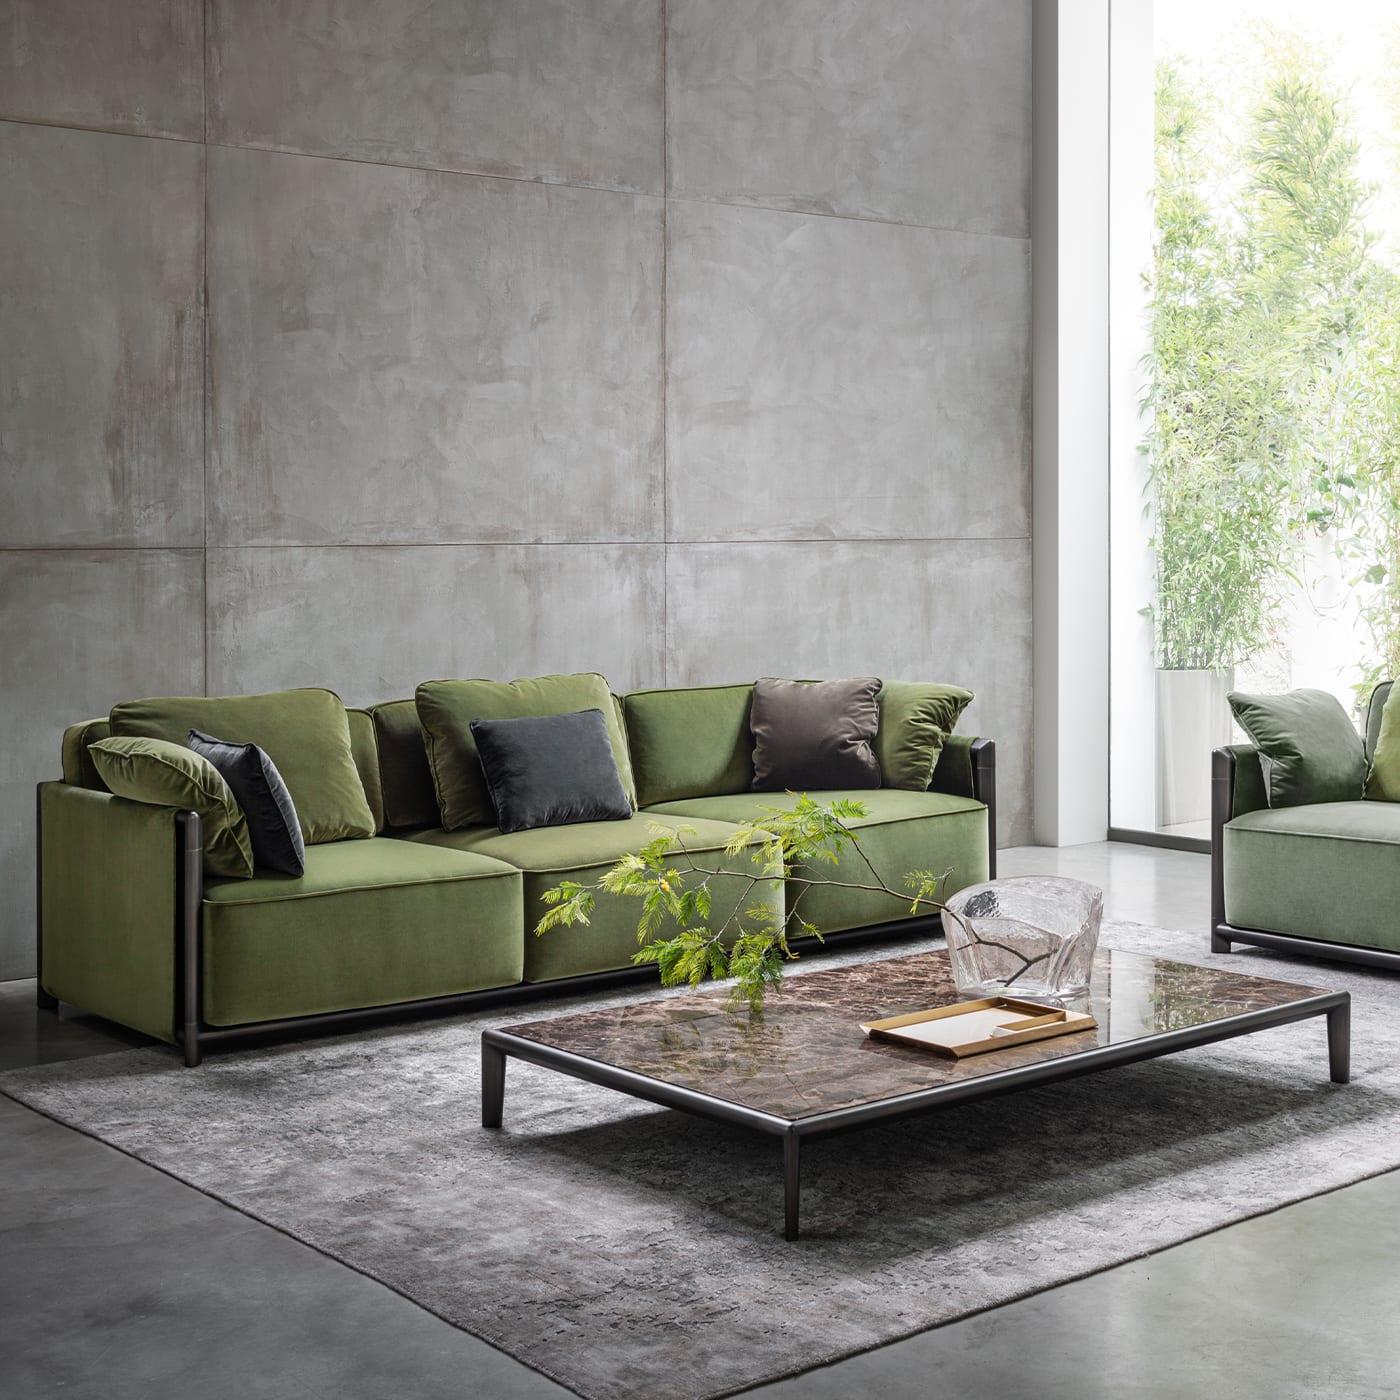 Plüschige Volumina mit reichhaltiger Polsterung und ein edler, olivgrüner Stoffbezug verleihen diesem Sofa einen verwöhnenden Charakter, ohne dabei an Eleganz einzubüßen. Er wird auch in anderen Farbvarianten angeboten, die sich am besten in jede